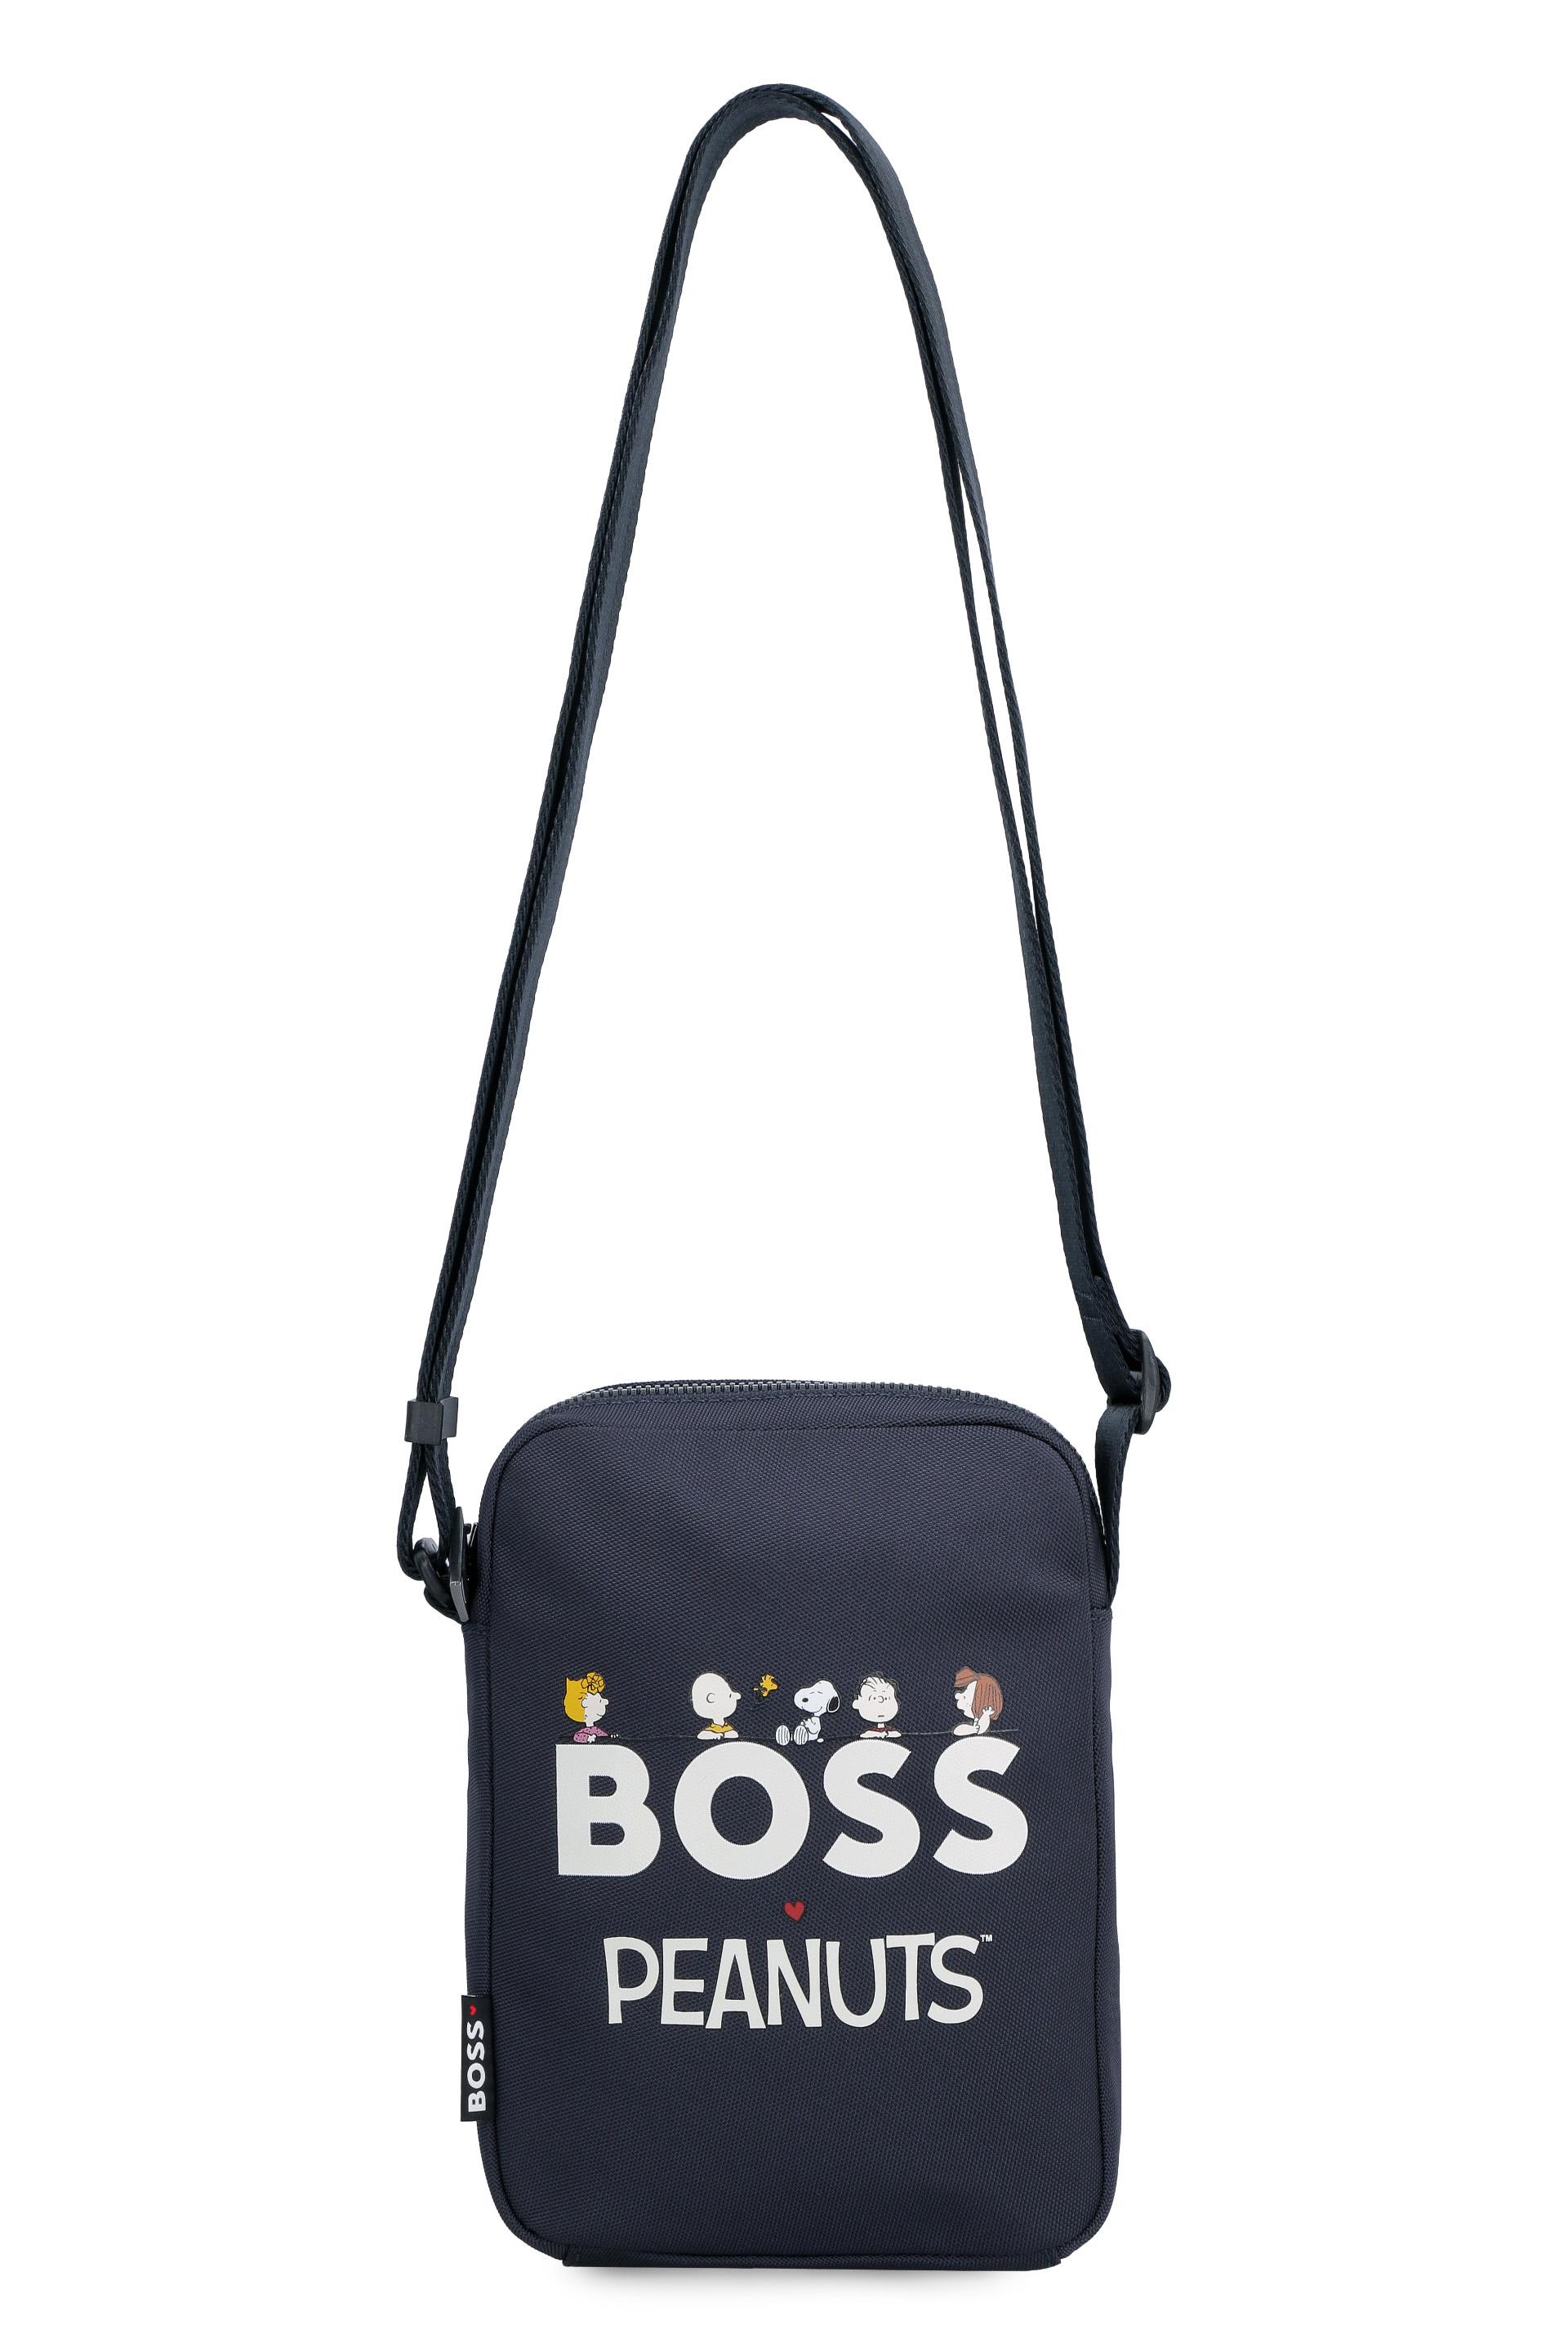 BOSS by HUGO BOSS X Peanuts - Nylon Messenger Bag in Gray for Men | Lyst